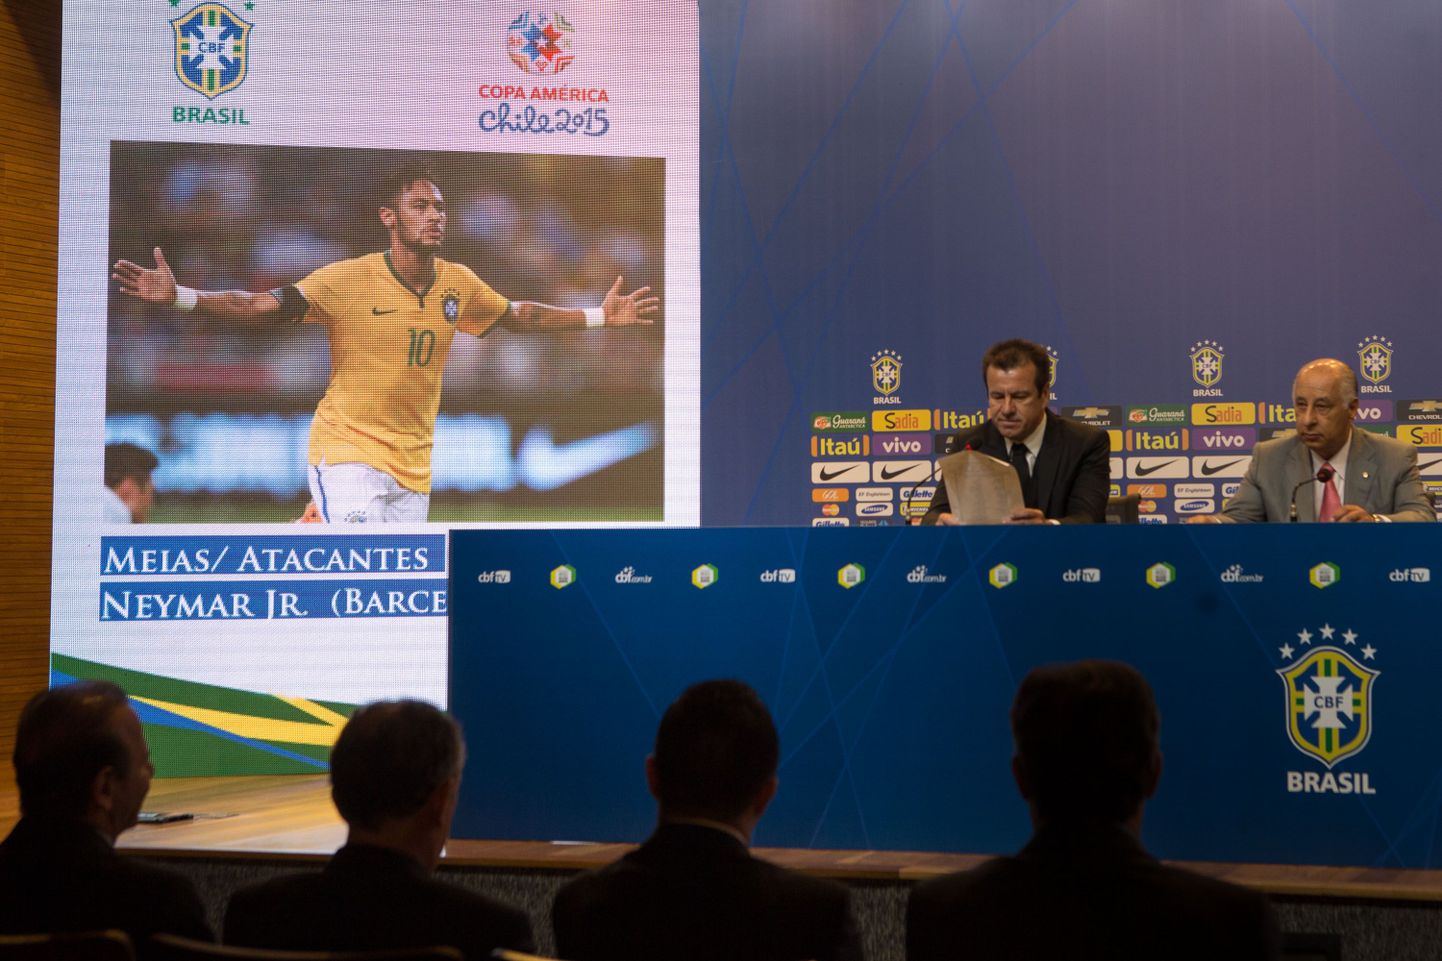 Brasiilia jalgpallikoondise peatreener Dunga avaldamas sel suvel toimuva Copa America tarbeks kokku pandud koondise koosseisu.